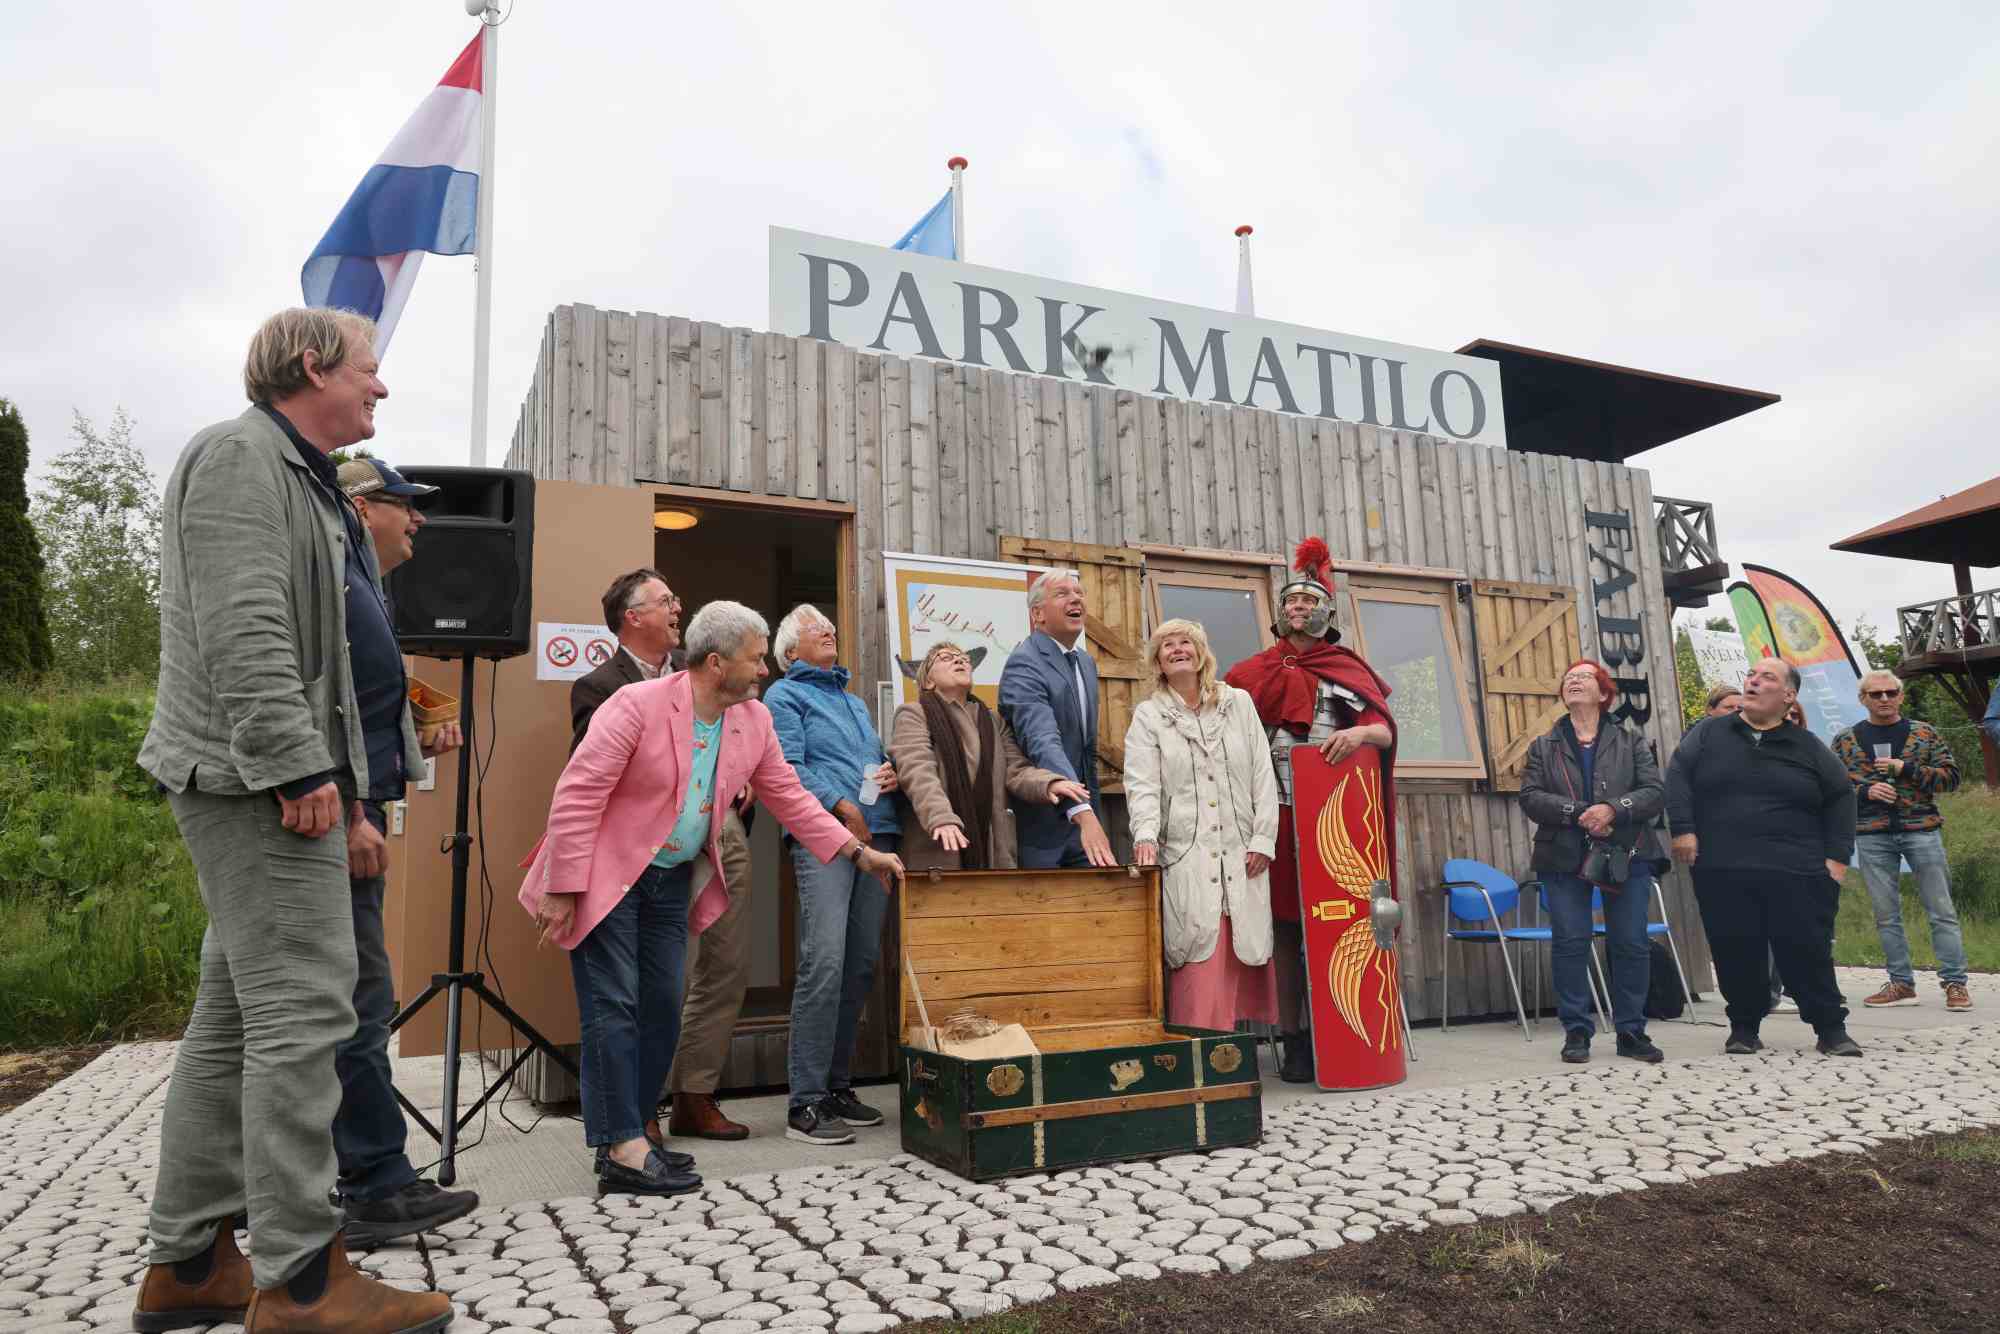 20230601_Landelijke, provinciale en lokale Limes-bestuurders openen de Reiskist naar de toekomst bij opening Fabrica Park Matilo_foto Willem de Jeu_048874.JPG